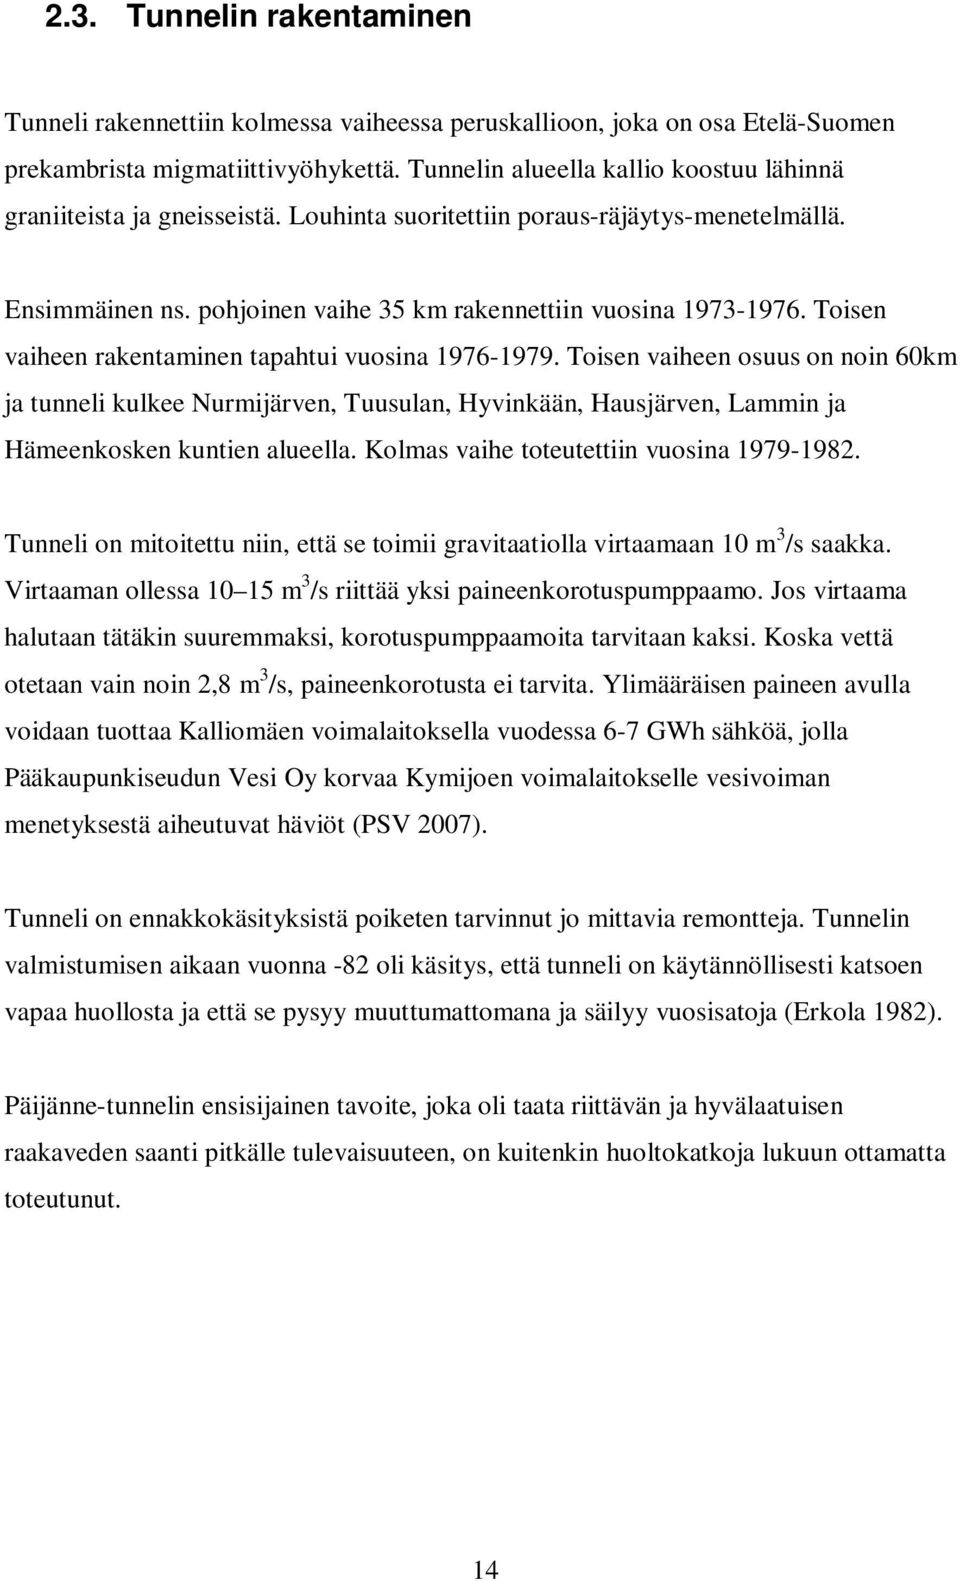 Toisen vaiheen rakentaminen tapahtui vuosina 1976-1979. Toisen vaiheen osuus on noin 60km ja tunneli kulkee Nurmijärven, Tuusulan, Hyvinkään, Hausjärven, Lammin ja Hämeenkosken kuntien alueella.